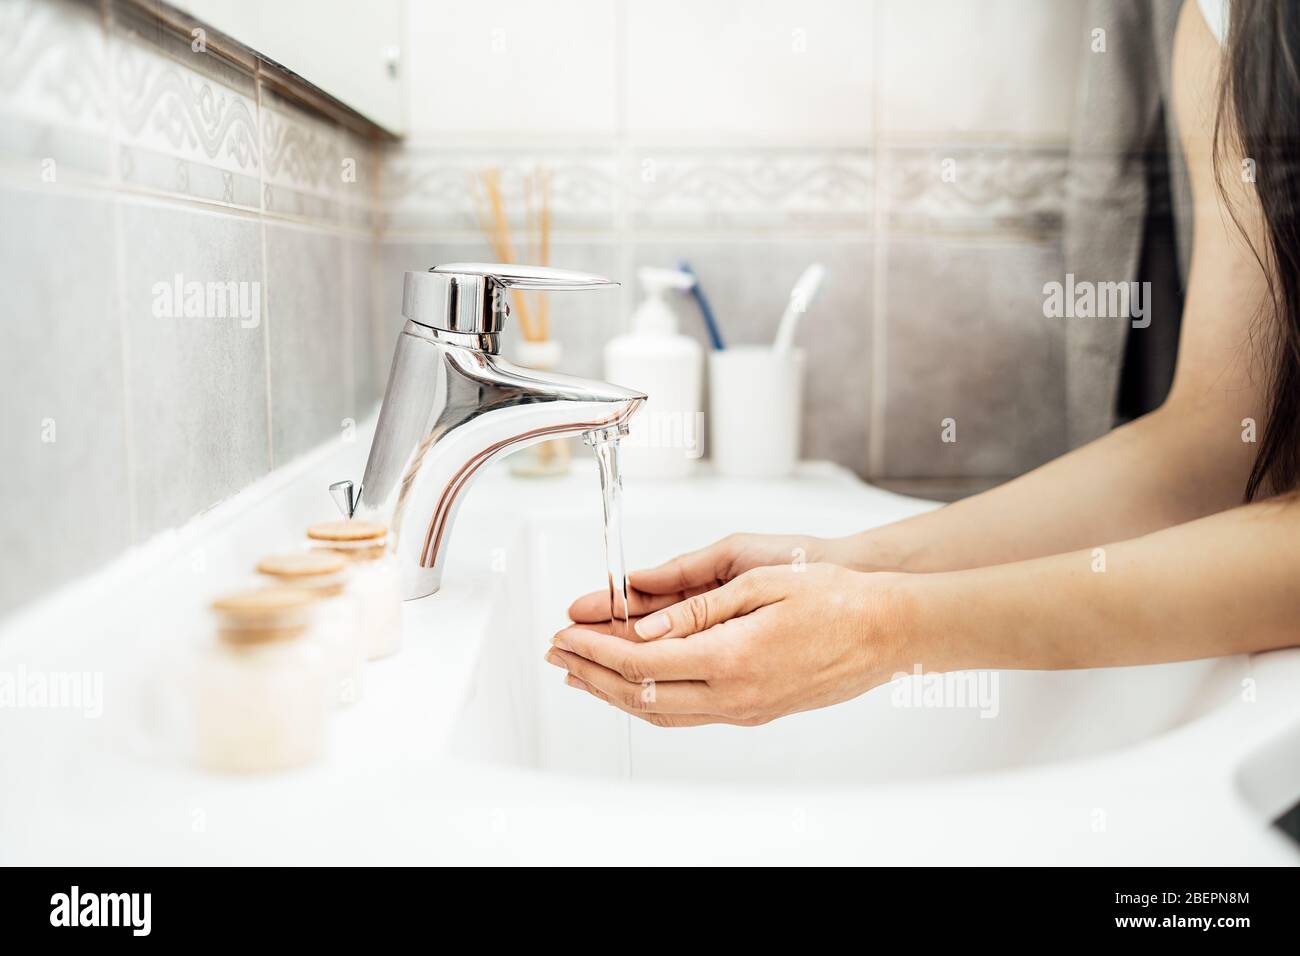 Pratica antisettica di lavaggio delle mani con sapone e acqua in bagno.procedura di decontaminazione,igiene personale routine.pulizia delle mani regolarmente. Foto Stock